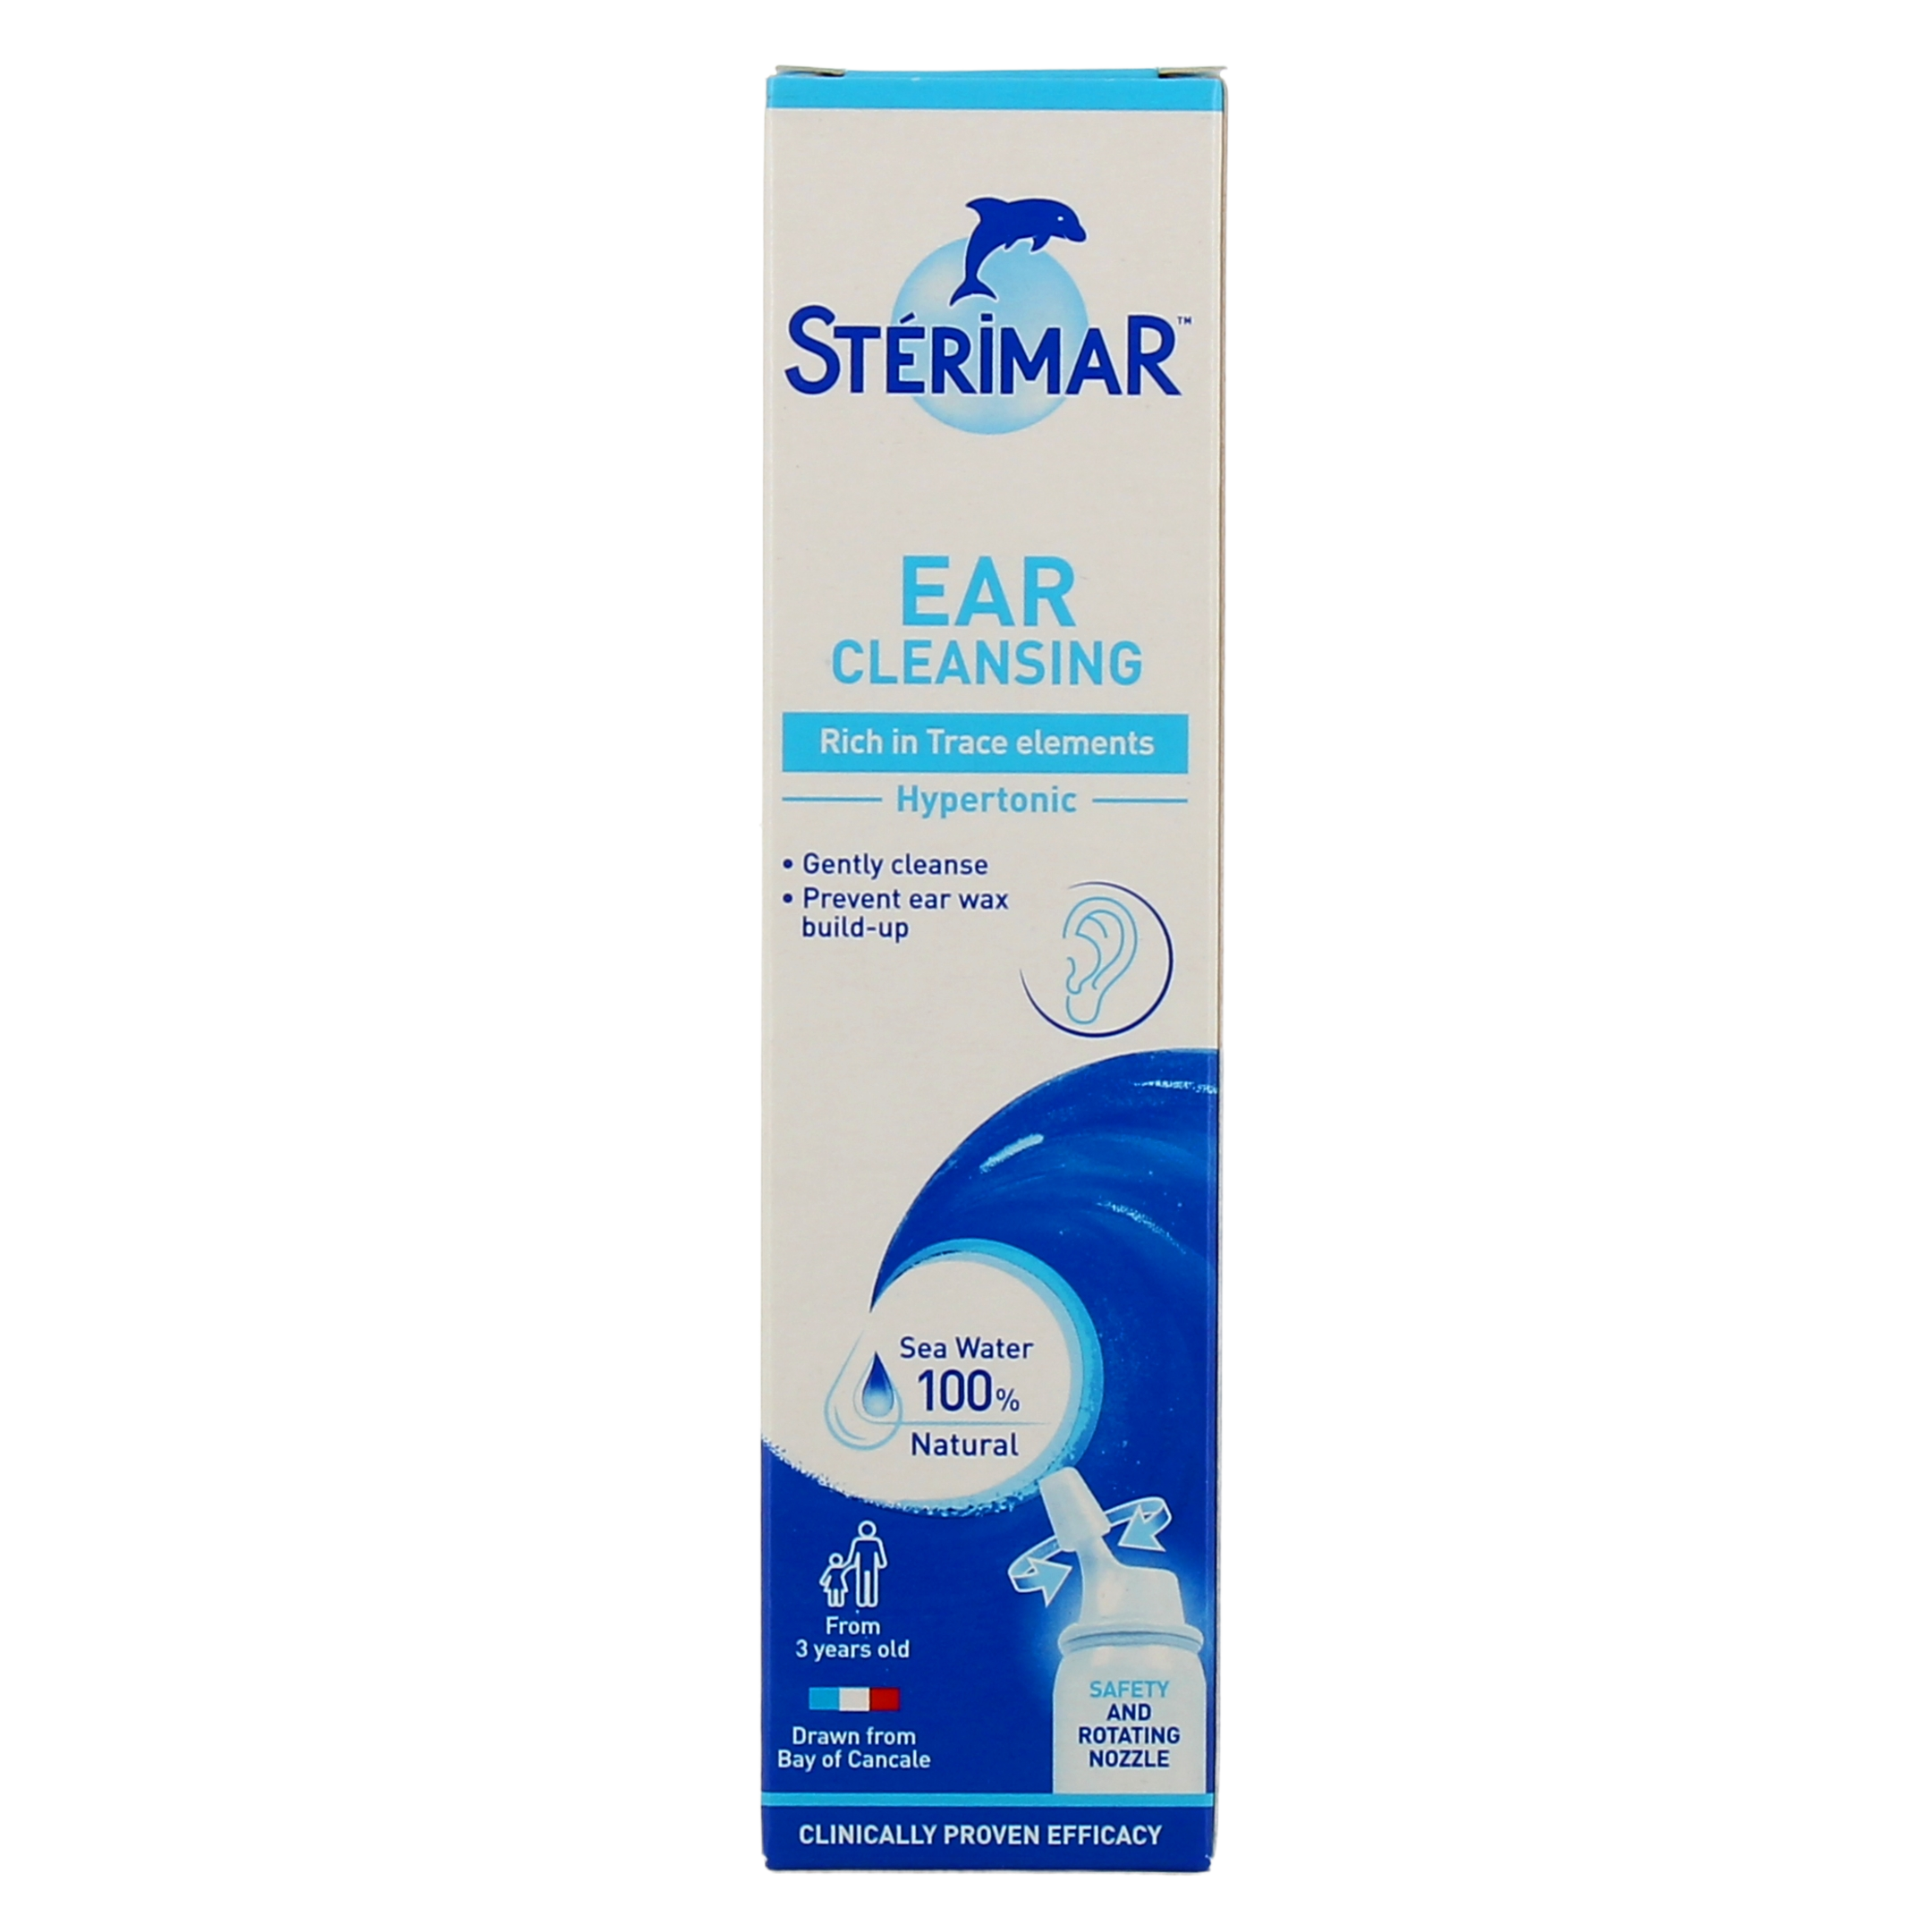 Sterimar Hygiène des oreilles spray hypertonique - Prévention bouchon